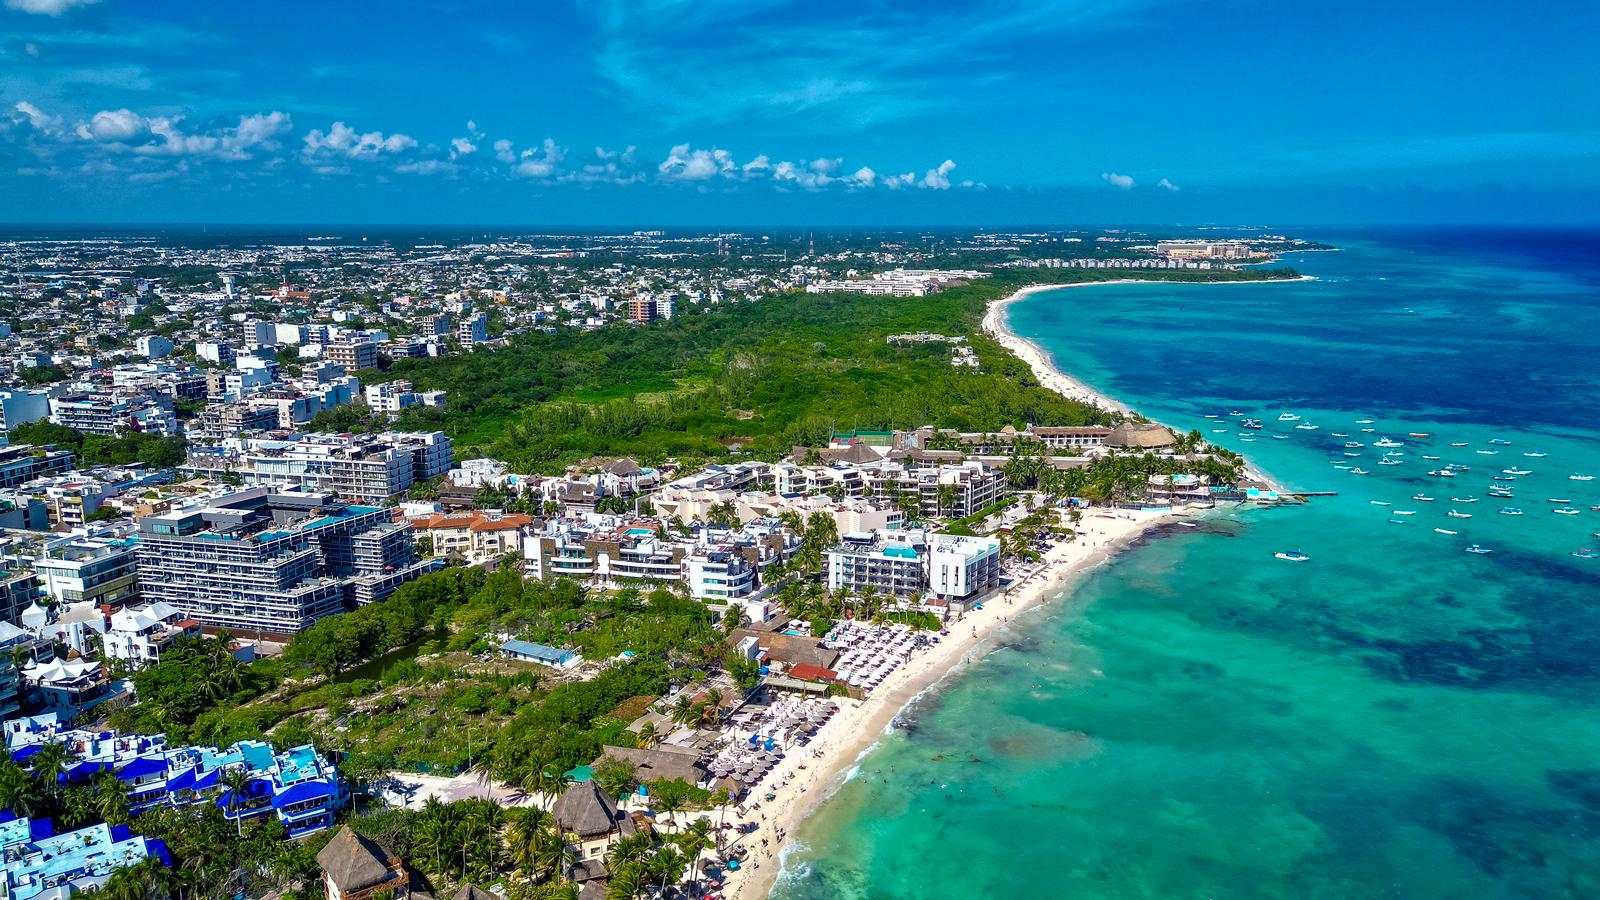 Quintana Roo registra los mayores índices de ocupación hotelera en playas a nivel nacional